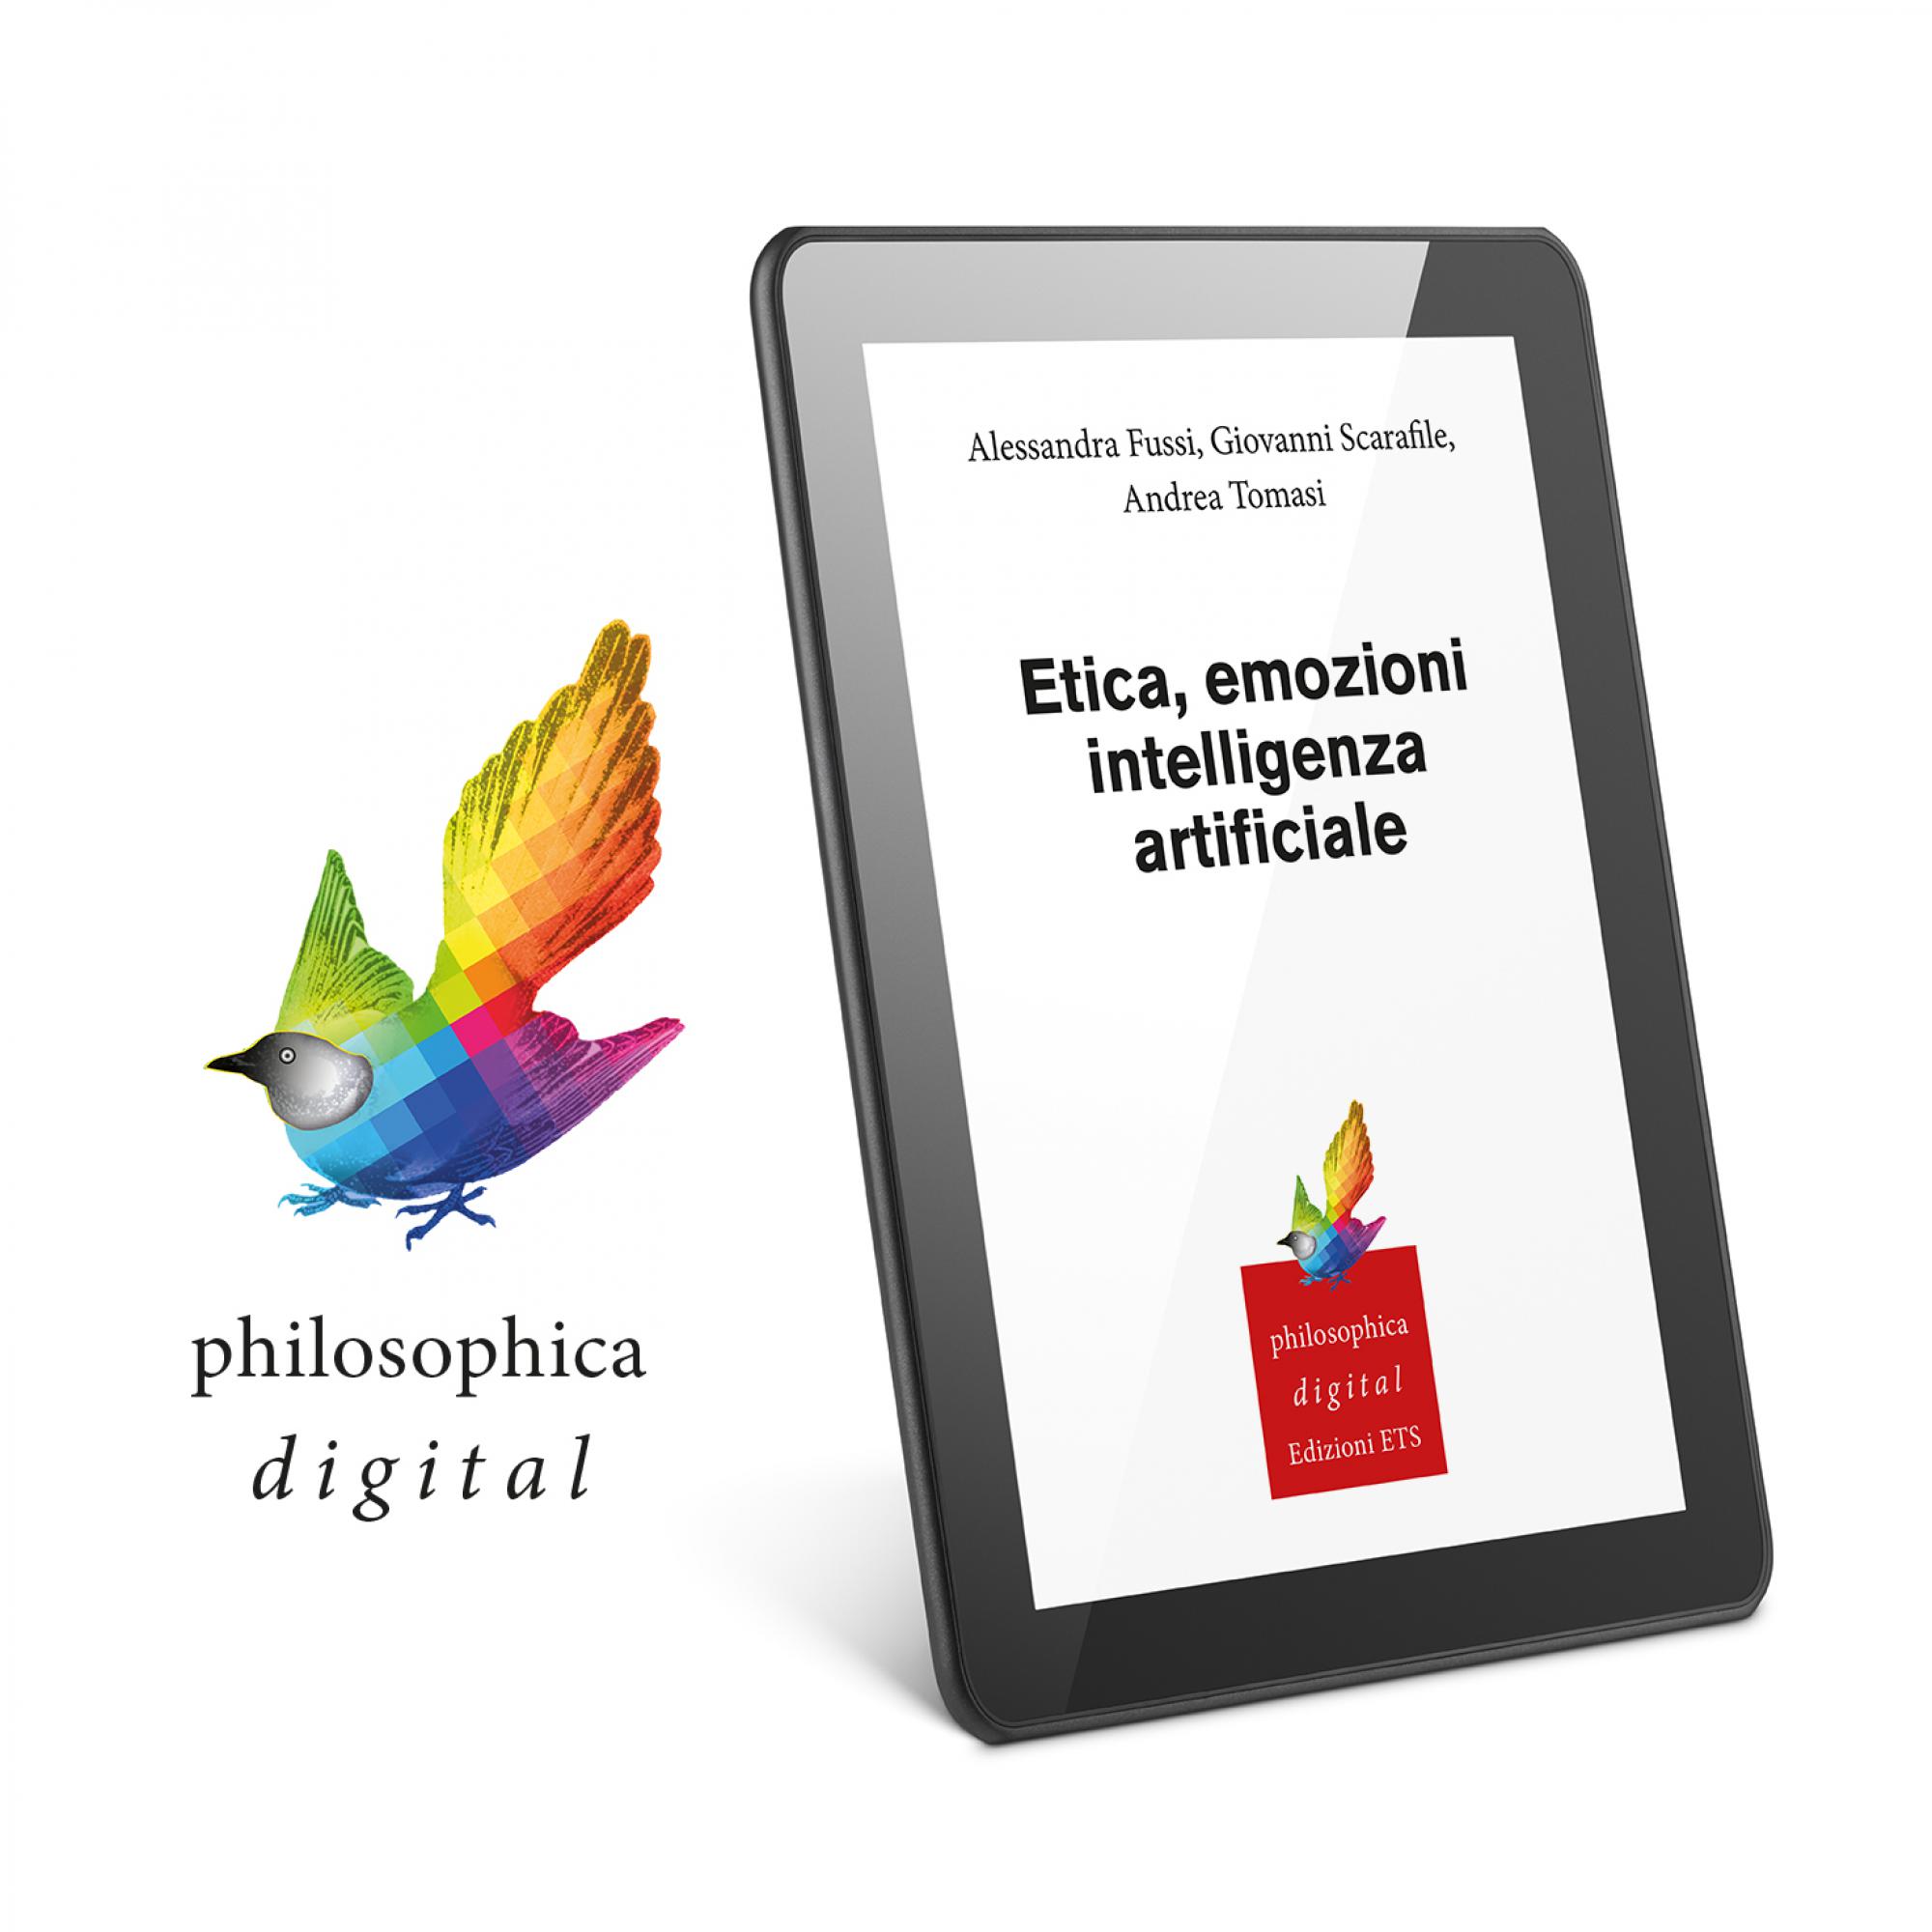 Etica, emozioni, intelligenza artificiale